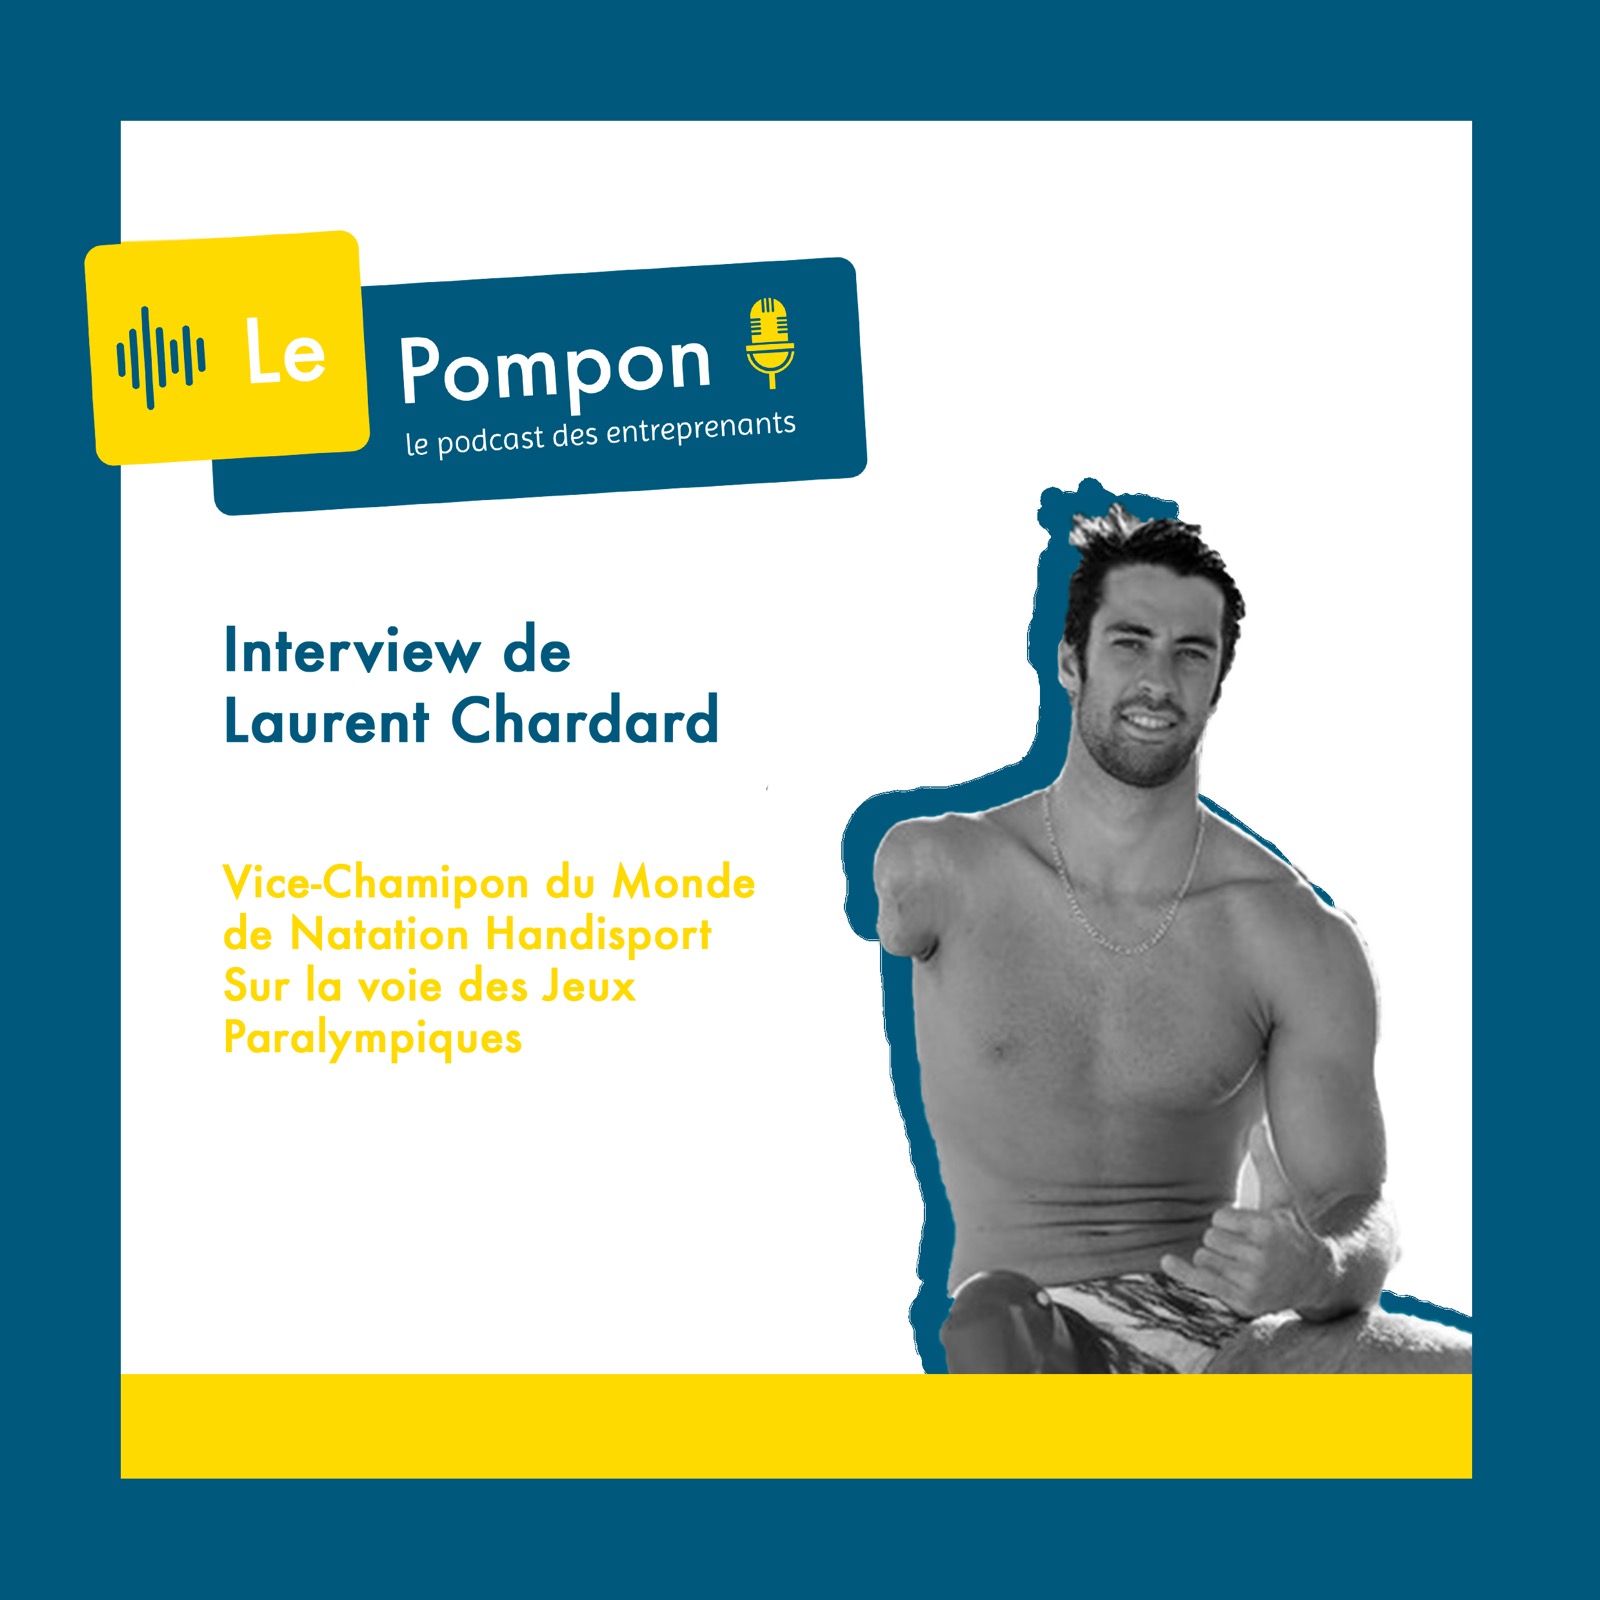 Illustration de l'épisode 13 du Podcast Le Pompon : Laurent Chardard, Vice-Champion du Monde de natation handisport